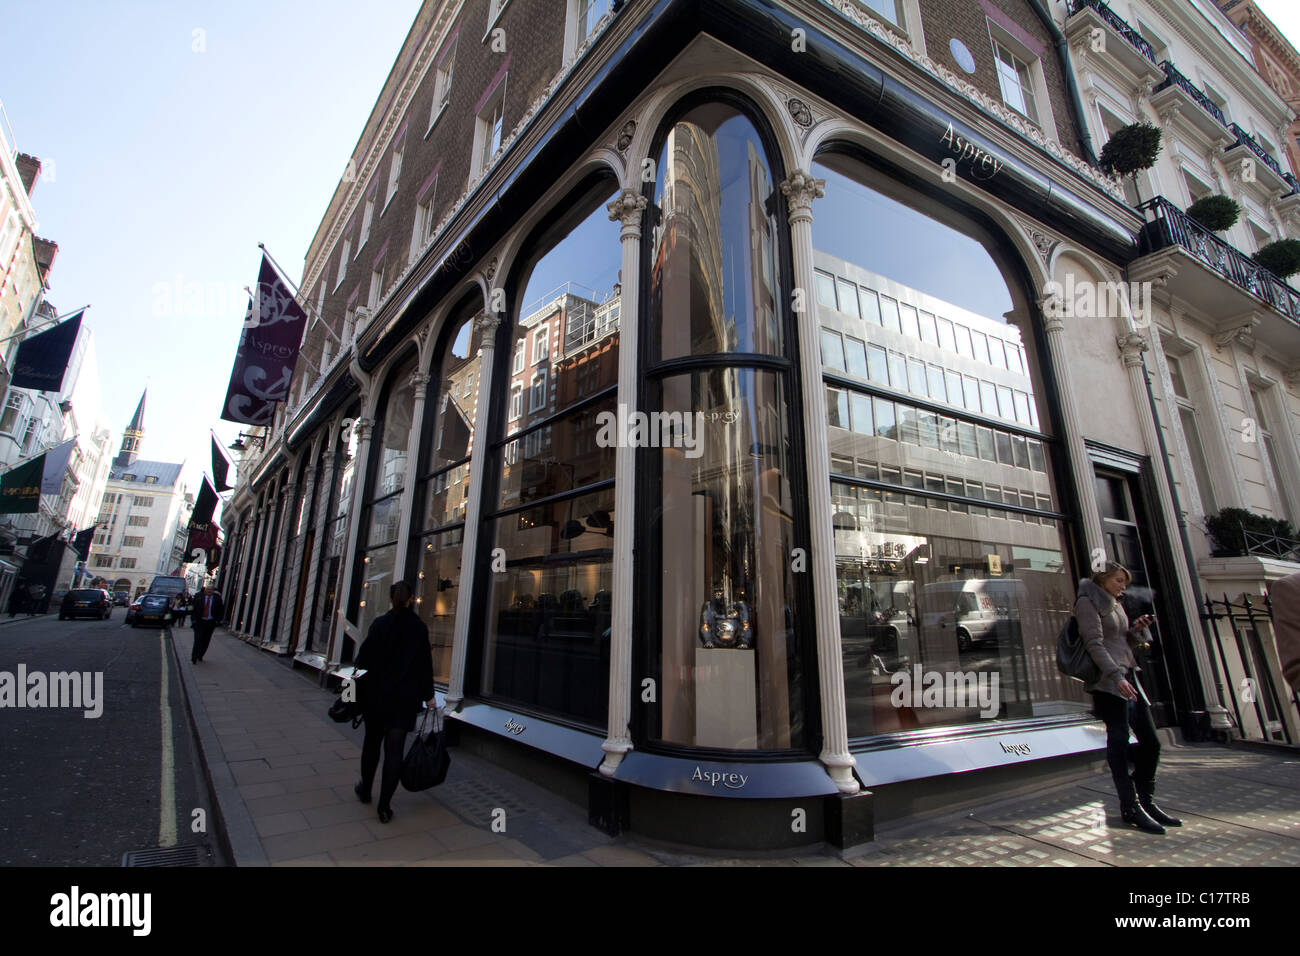 Aspreys gioielli negozio retail new bond street Londra Foto Stock